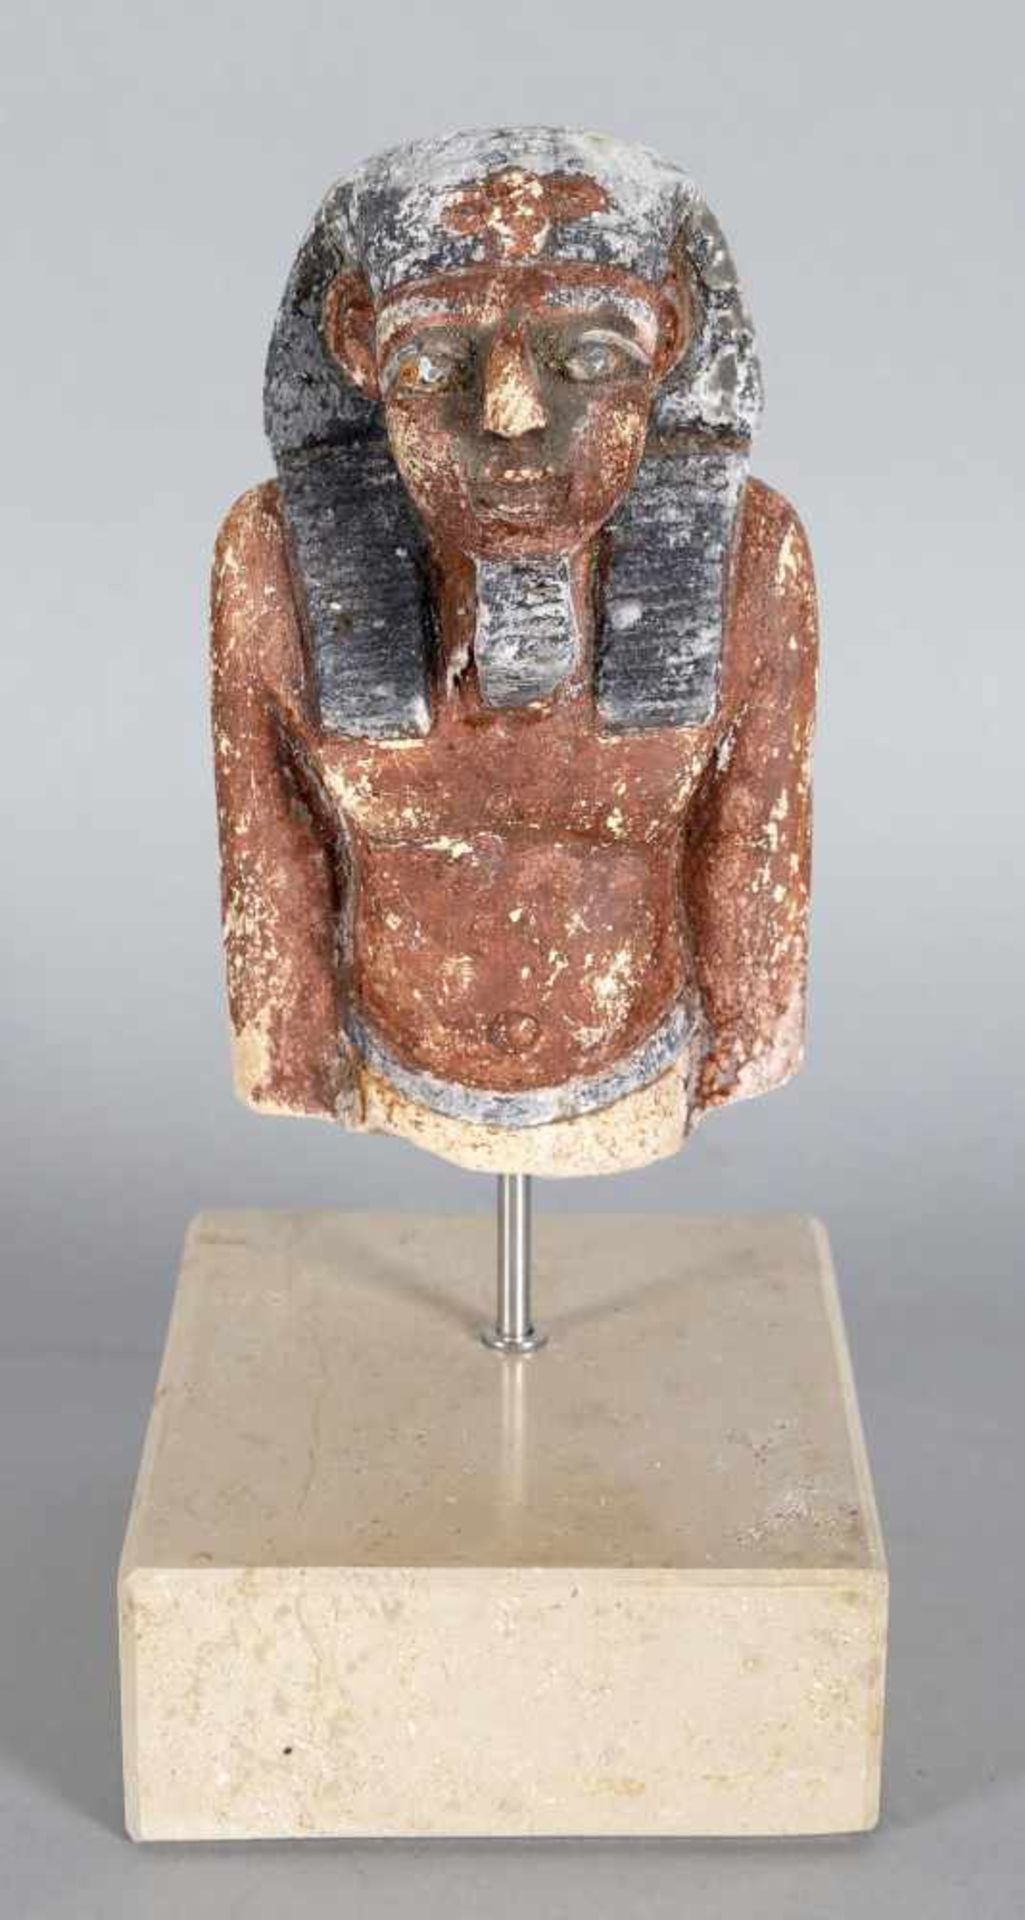 Oberkörper eines stehenden Mannes, ägyptisch, wohl nicht antikaus dem Stein gehauen und farbig